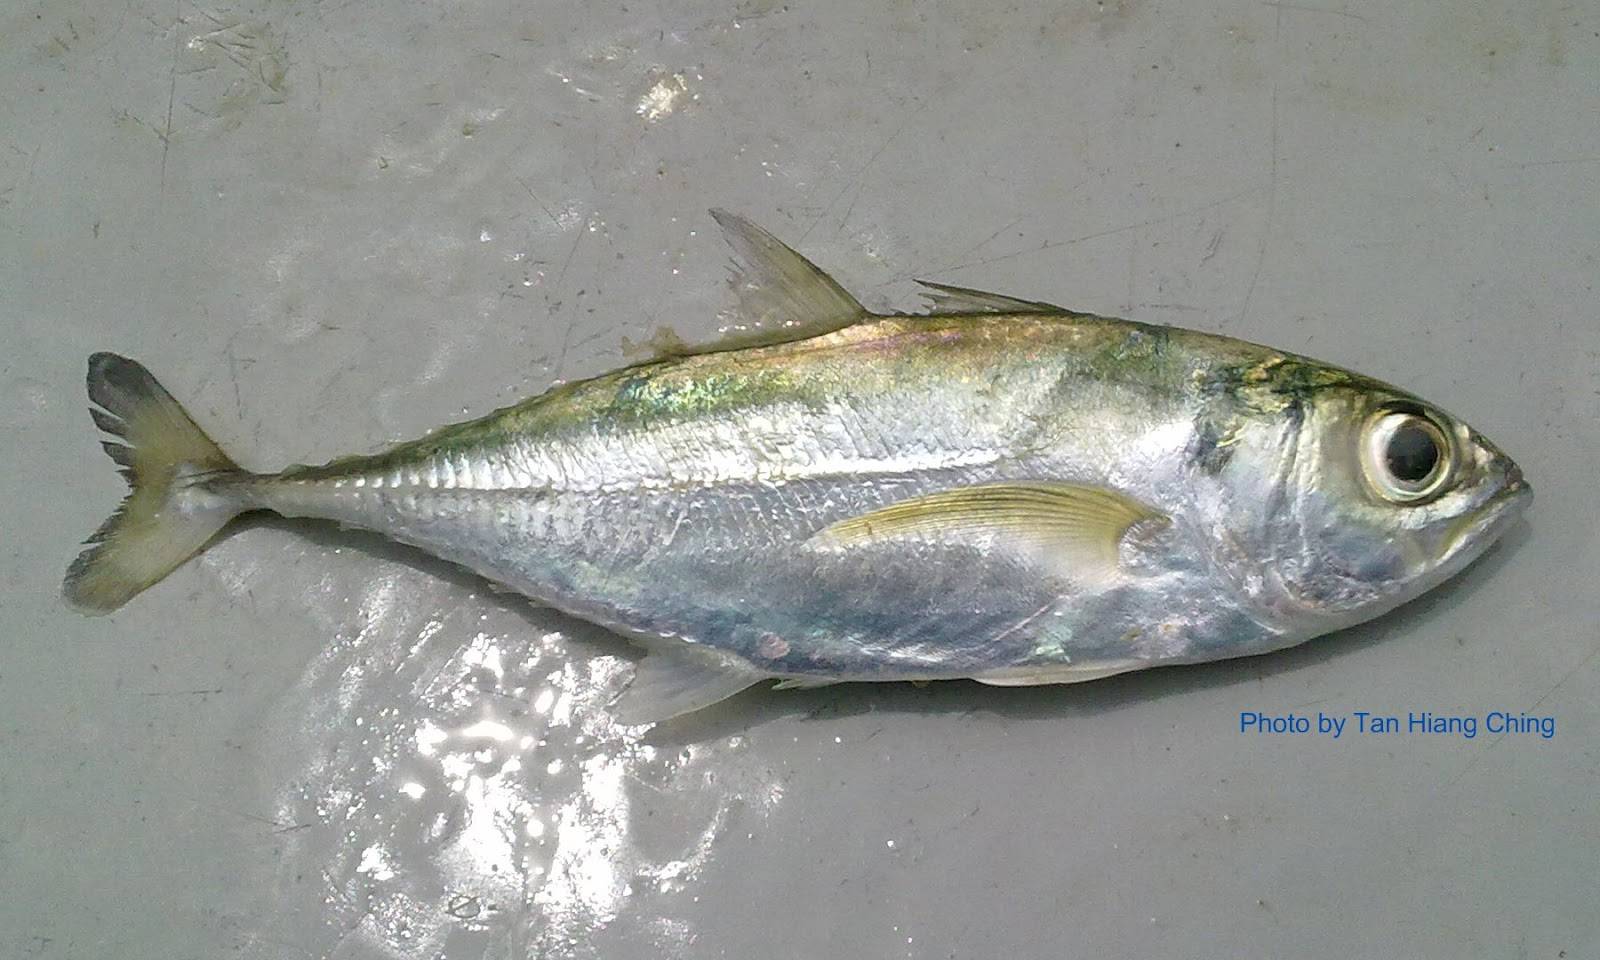 Басс пятнистый фото и описание – каталог рыб, смотреть онлайн